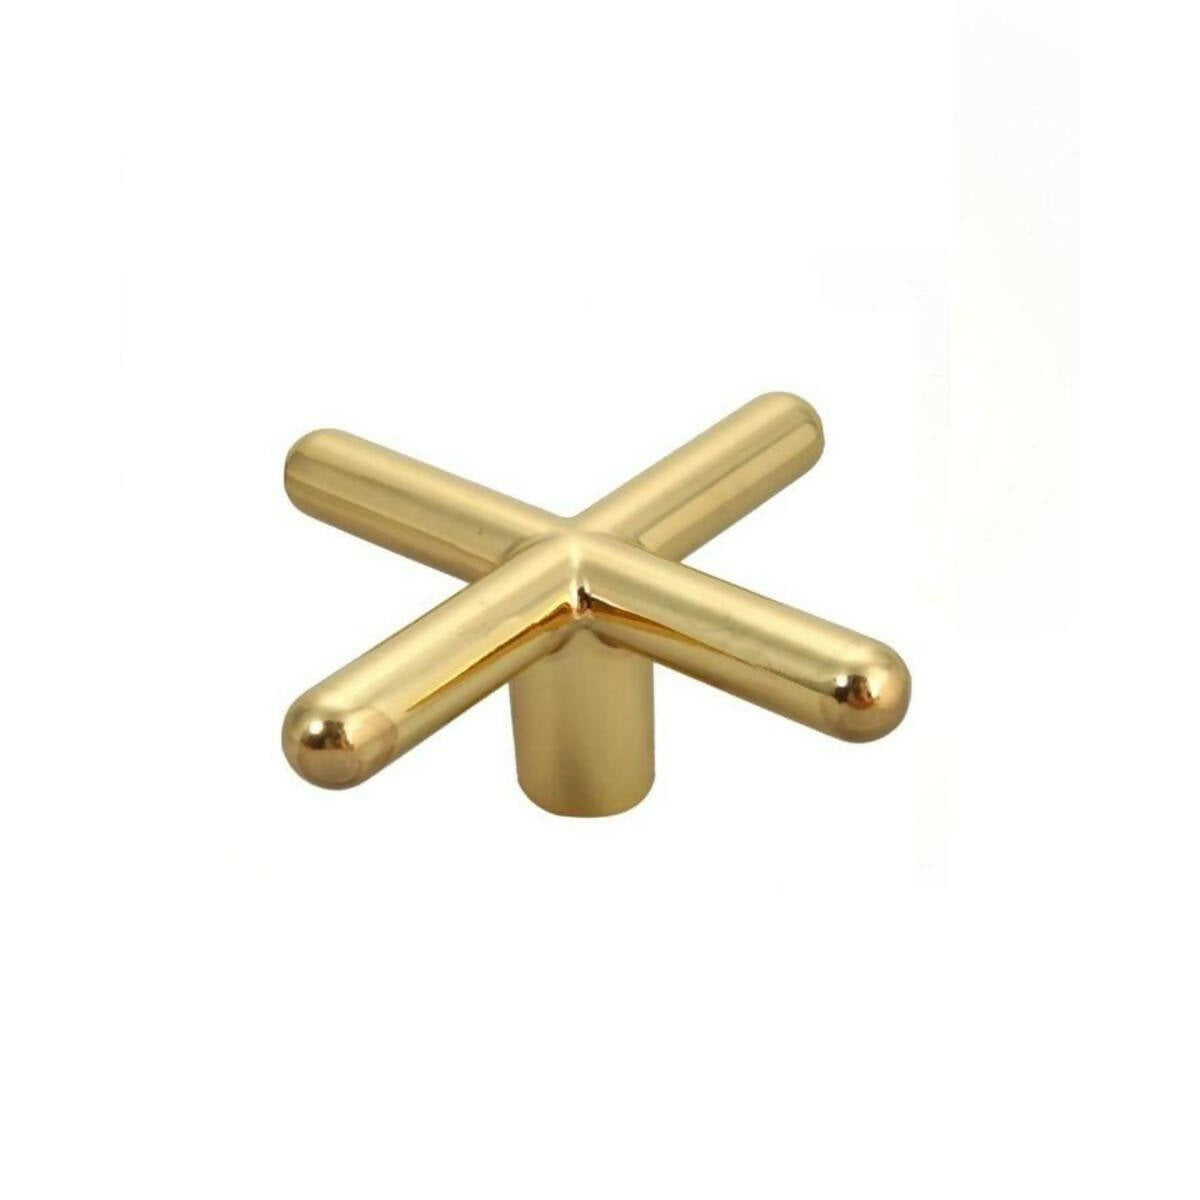 Brass Cross for Snooker Table